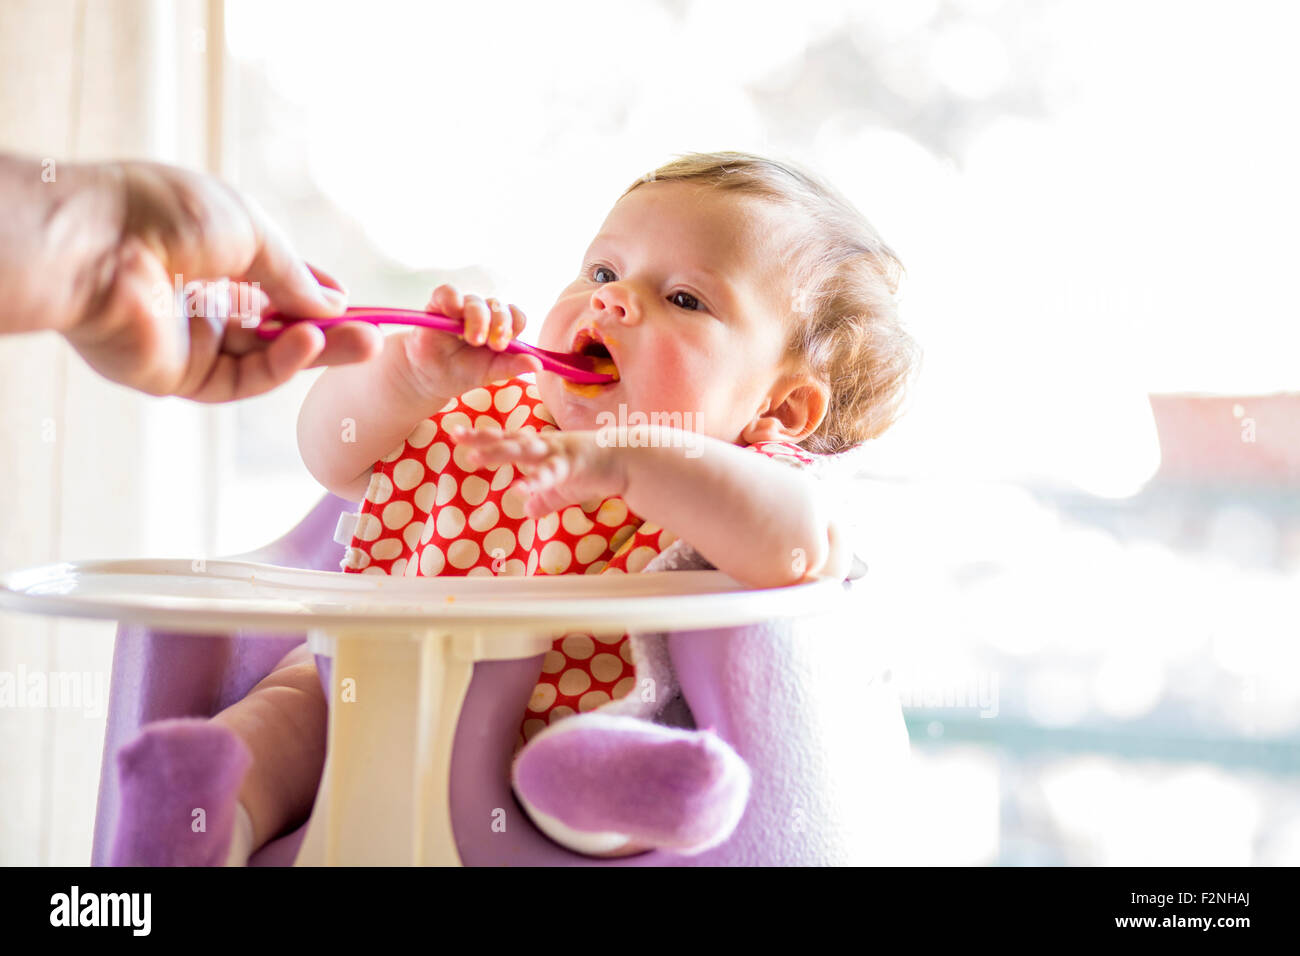 Caucasian baby girl eating de cuillère dans une chaise haute Banque D'Images